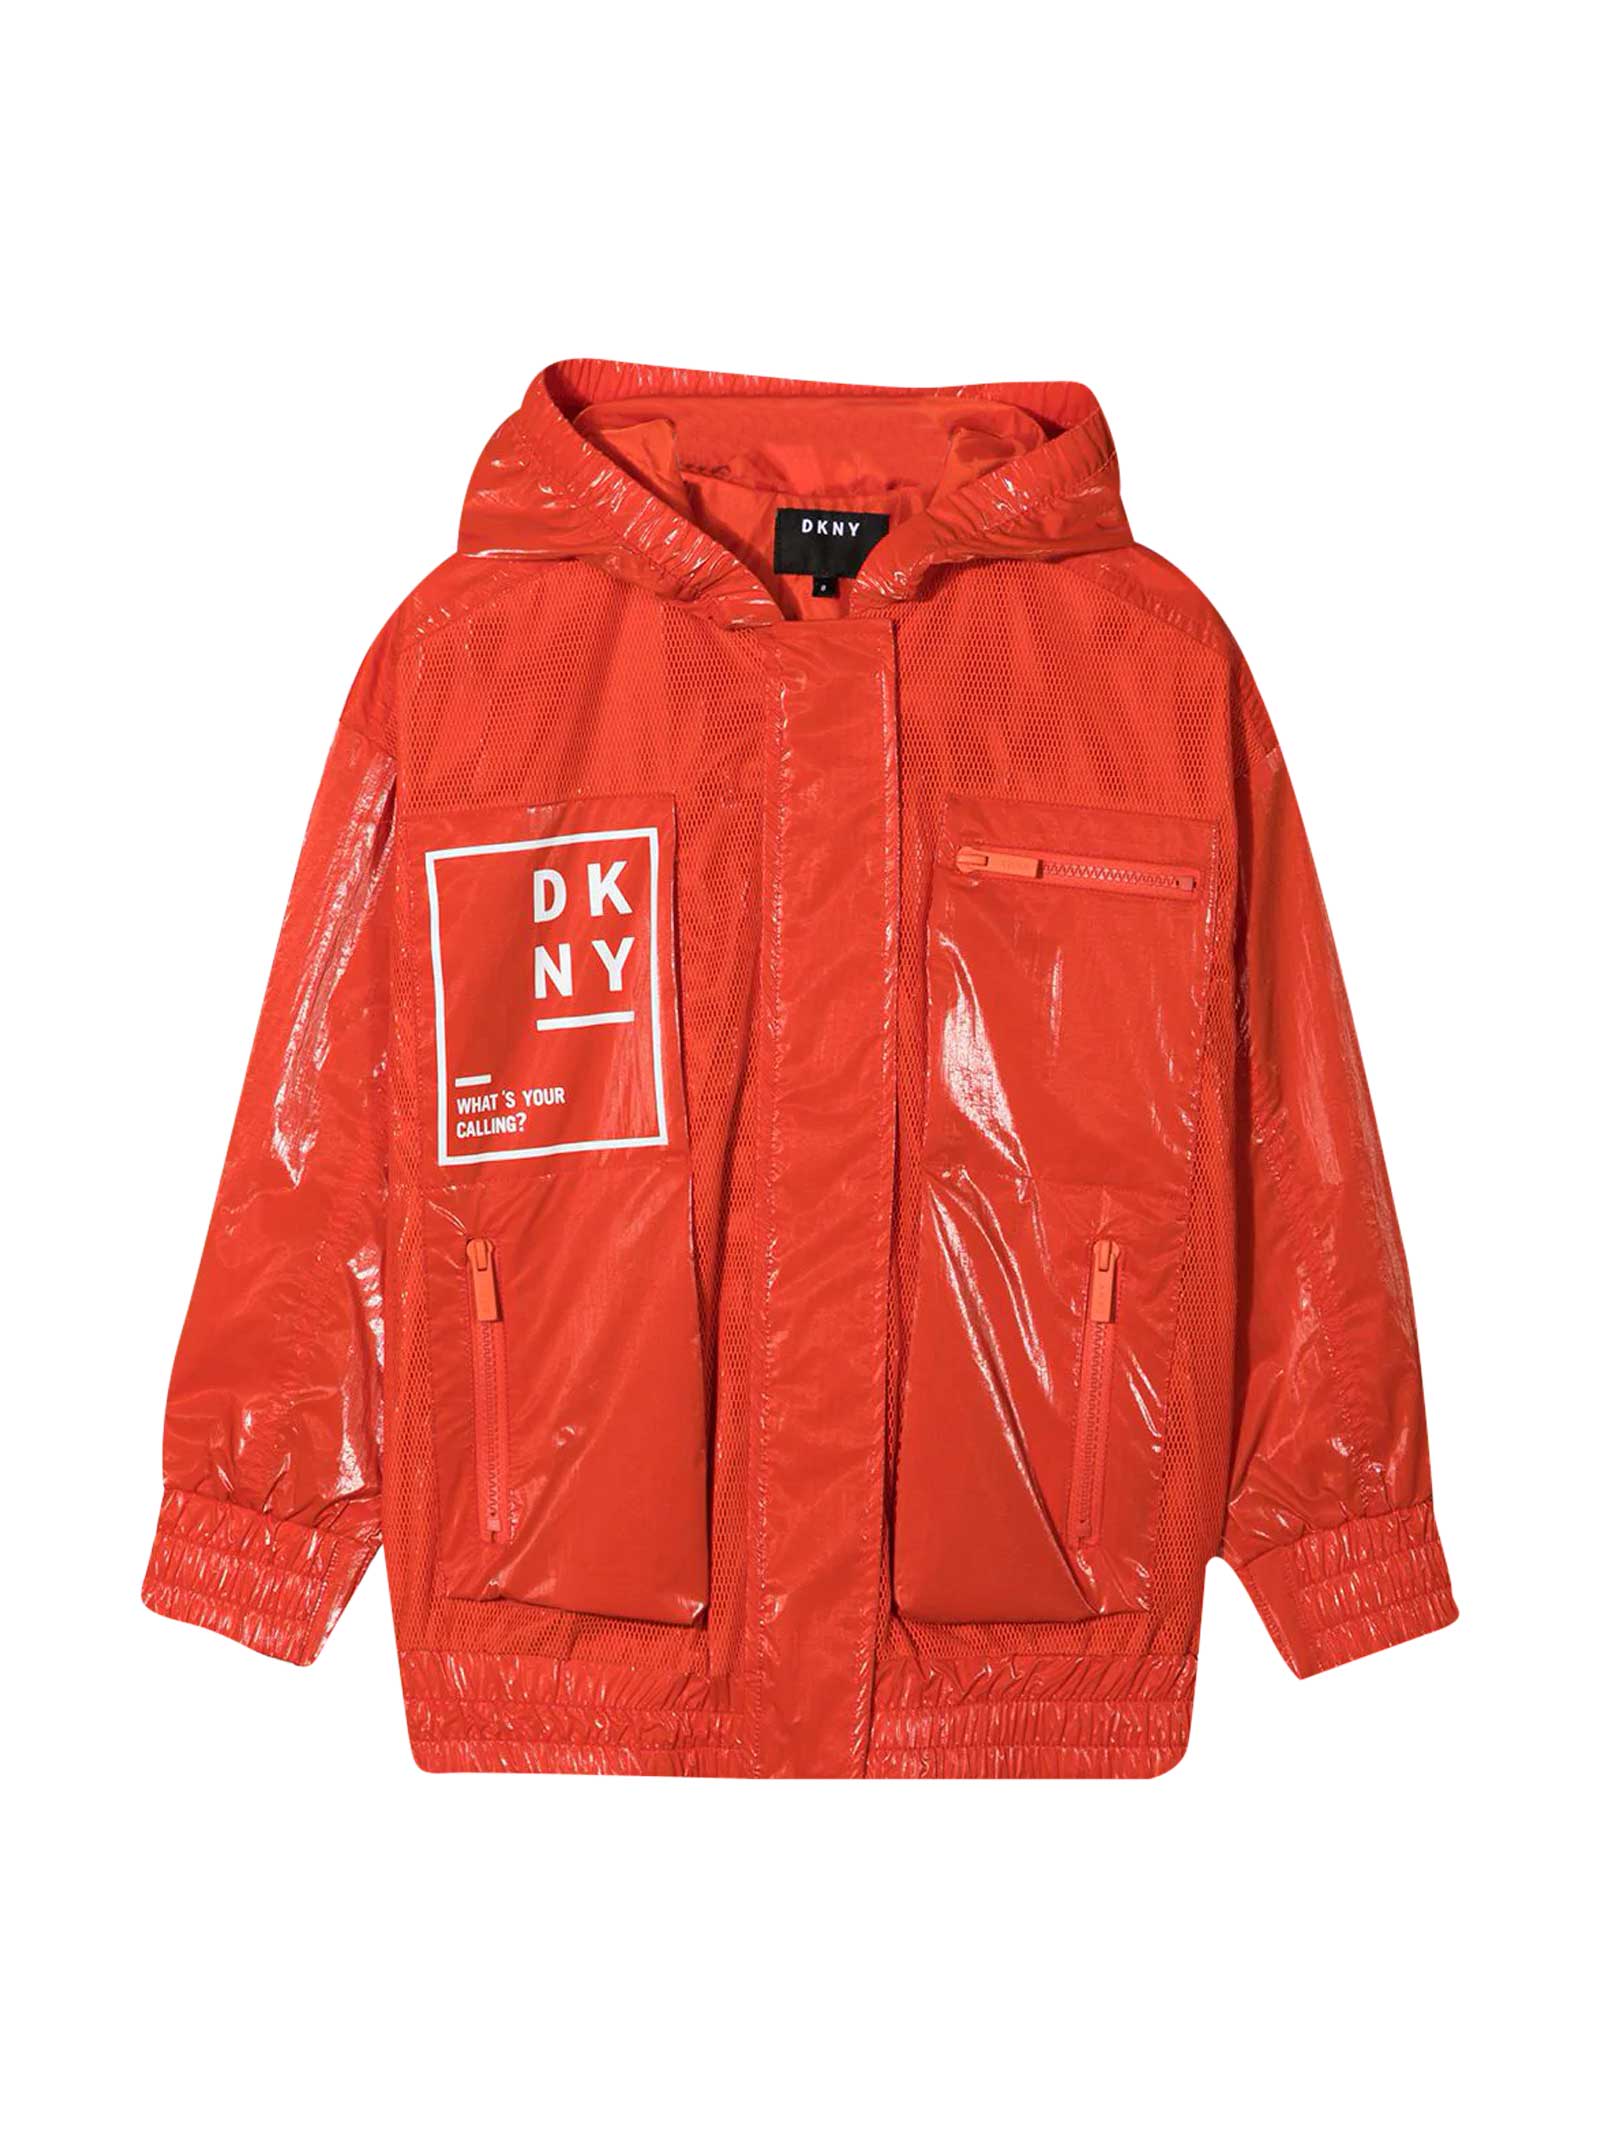 DKNY Red Teen Jacket